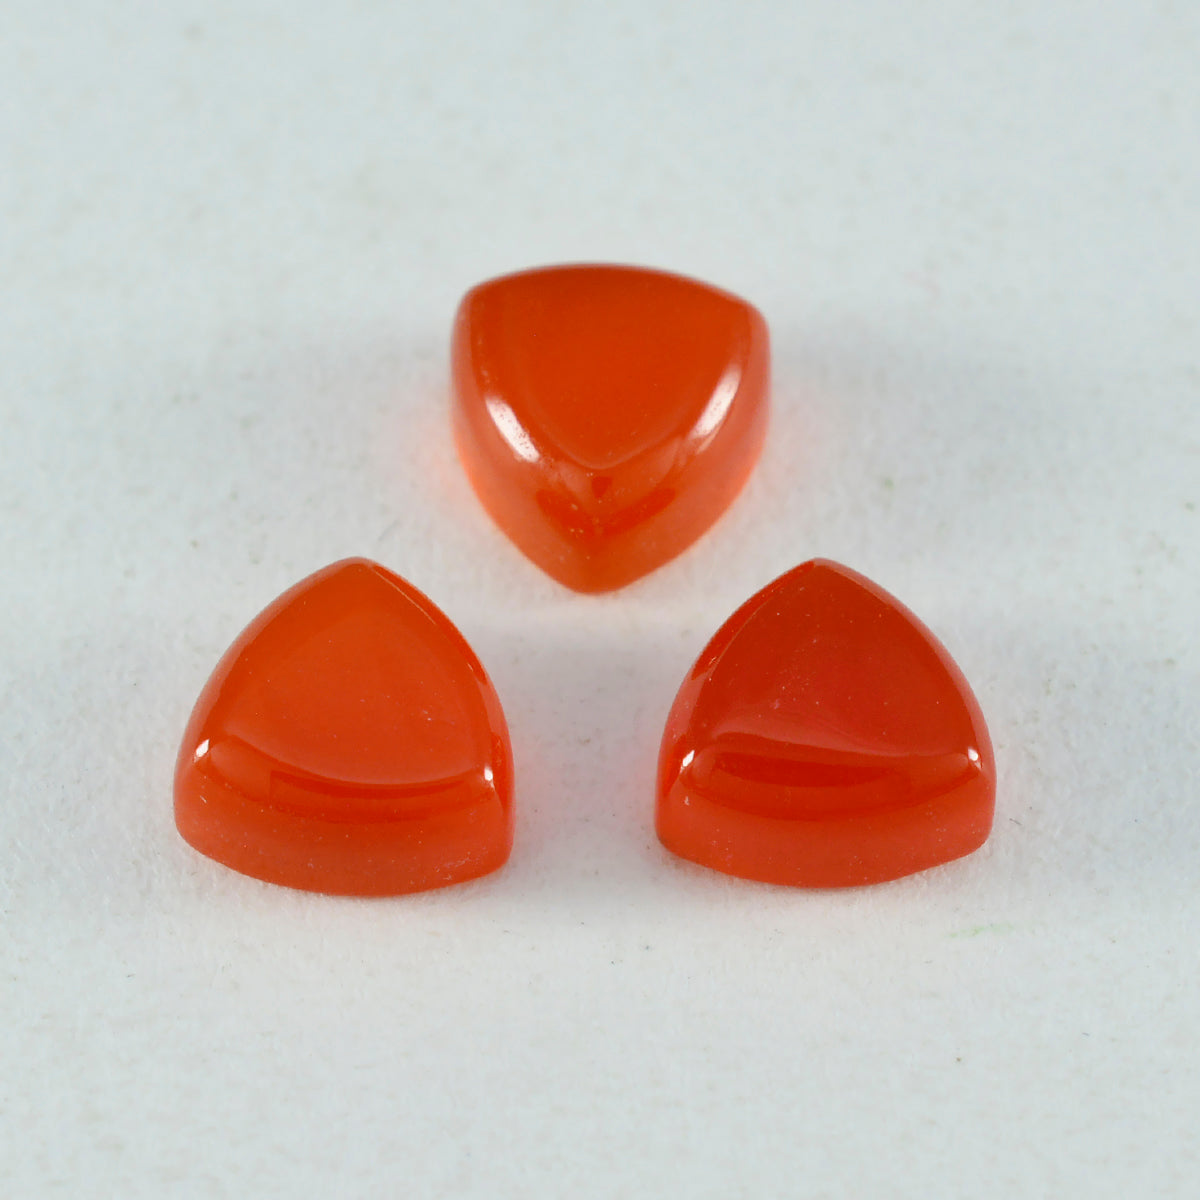 Riyogems 1PC Red Onyx Cabochon 13x13 mm Trillion Shape wonderful Quality Loose Gemstone